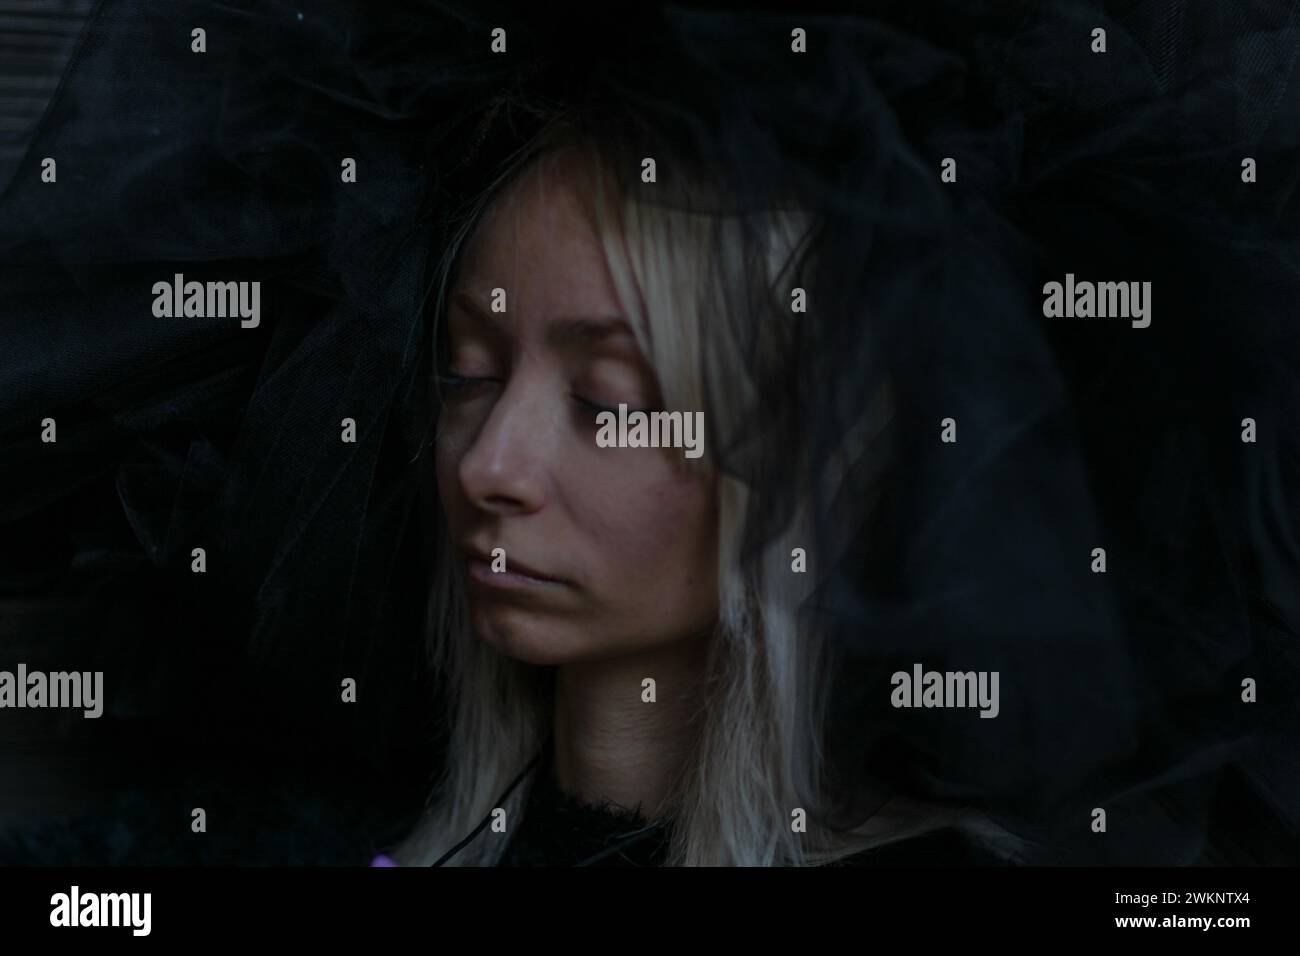 Das Gesicht einer jungen kaukasischen blonden Frau ist teilweise von einem dunklen Schleier verdeckt, ihre Augen sind in einem ruhigen Ausdruck geschlossen Stockfoto